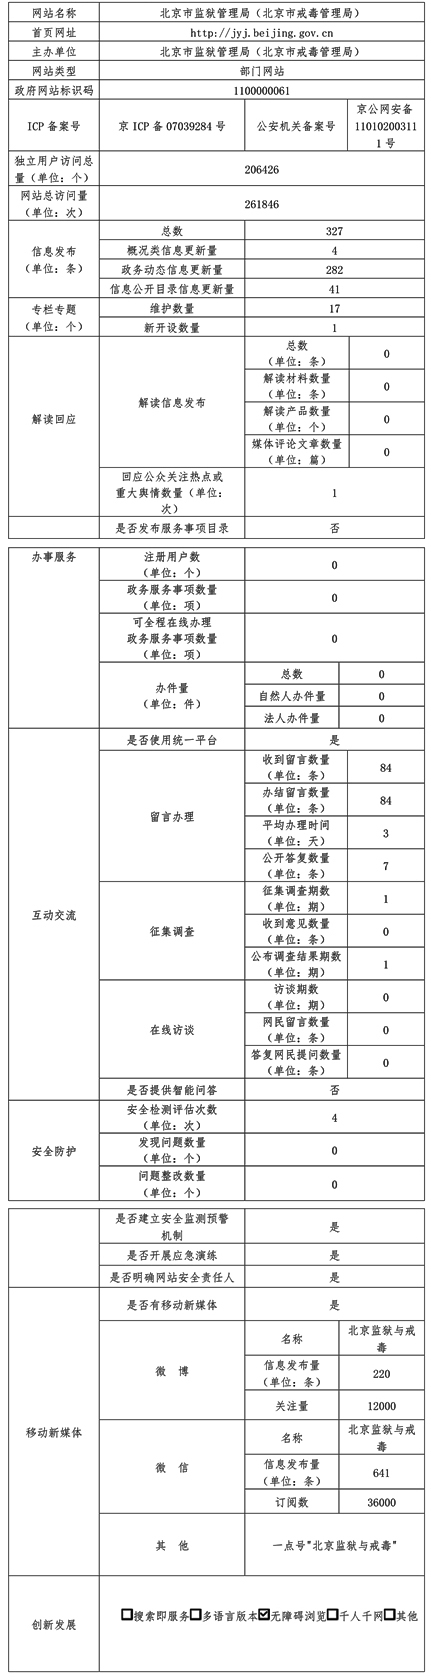 北京市监狱管理局2021年政府网站年度工作报表